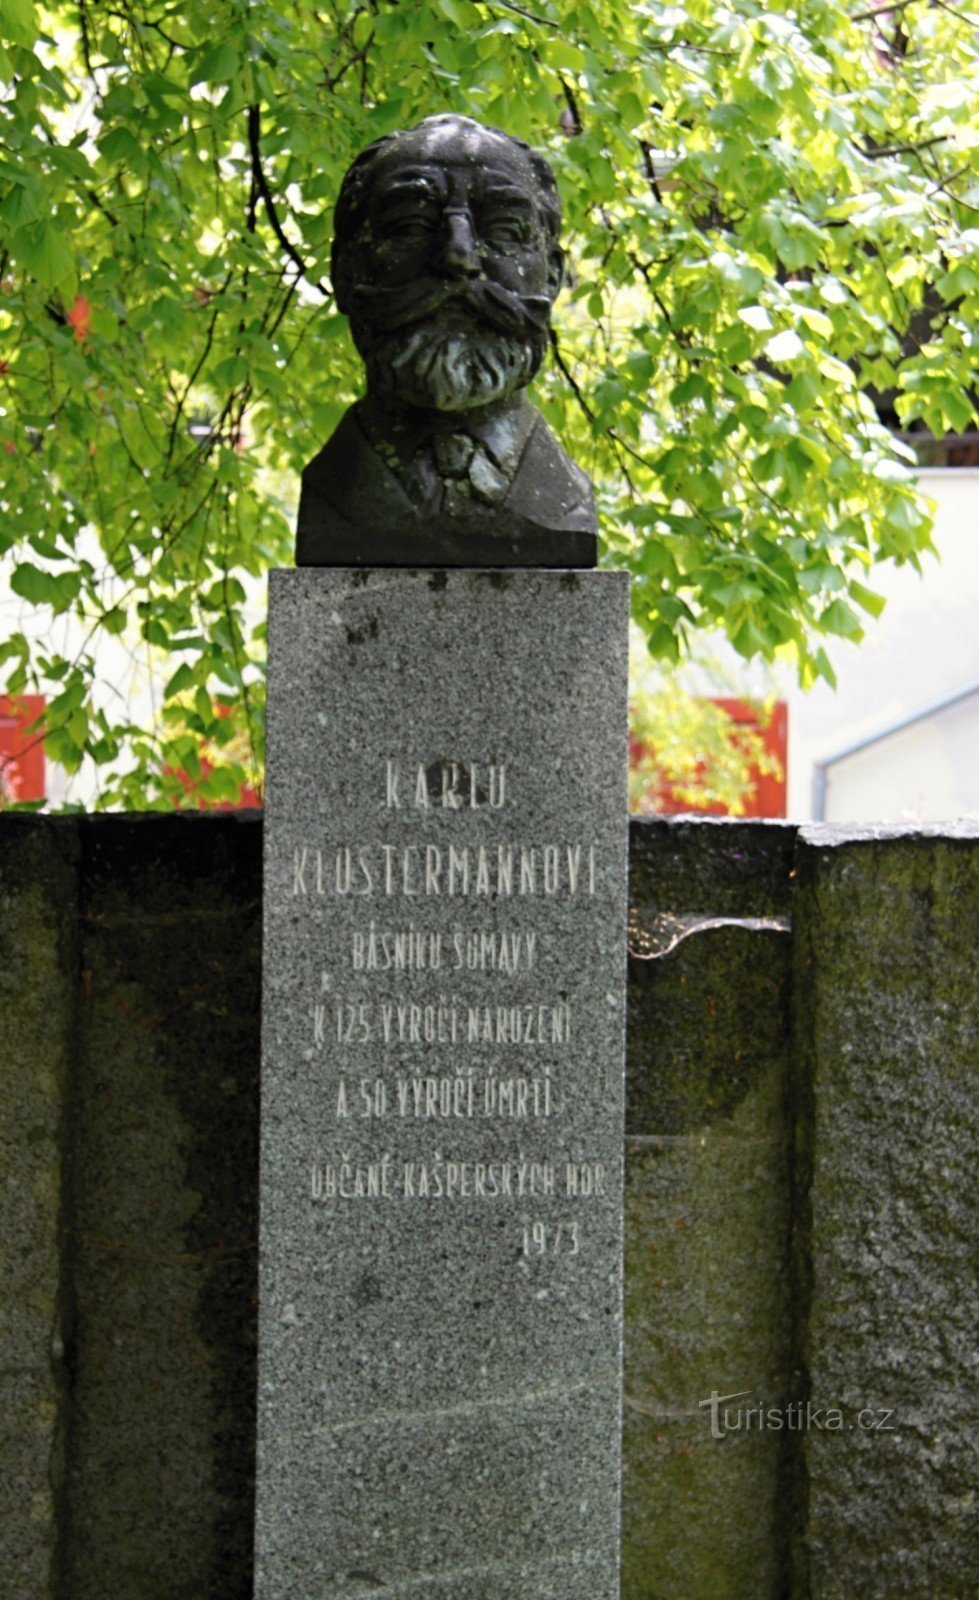 Μνημείο του Karel Klostrmann